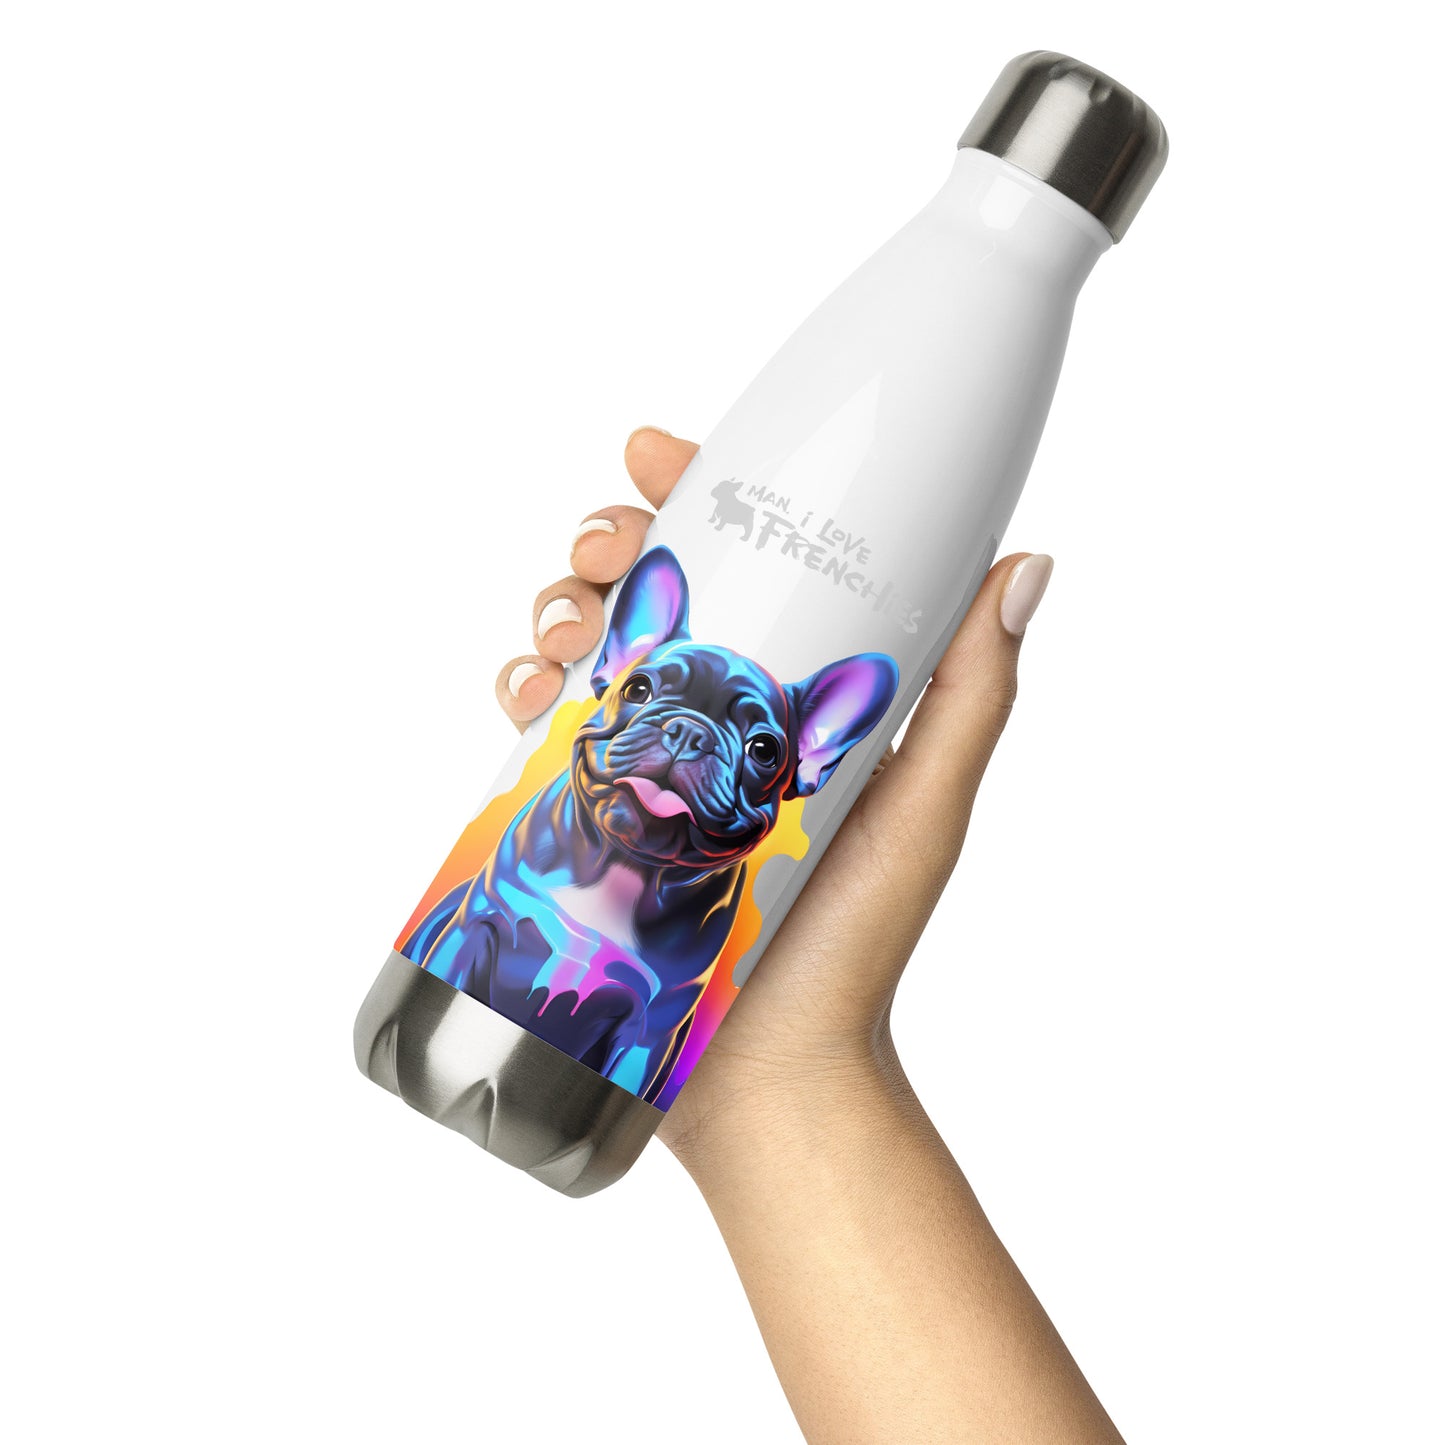 Neon Blue Stainless Steel Water Bottle